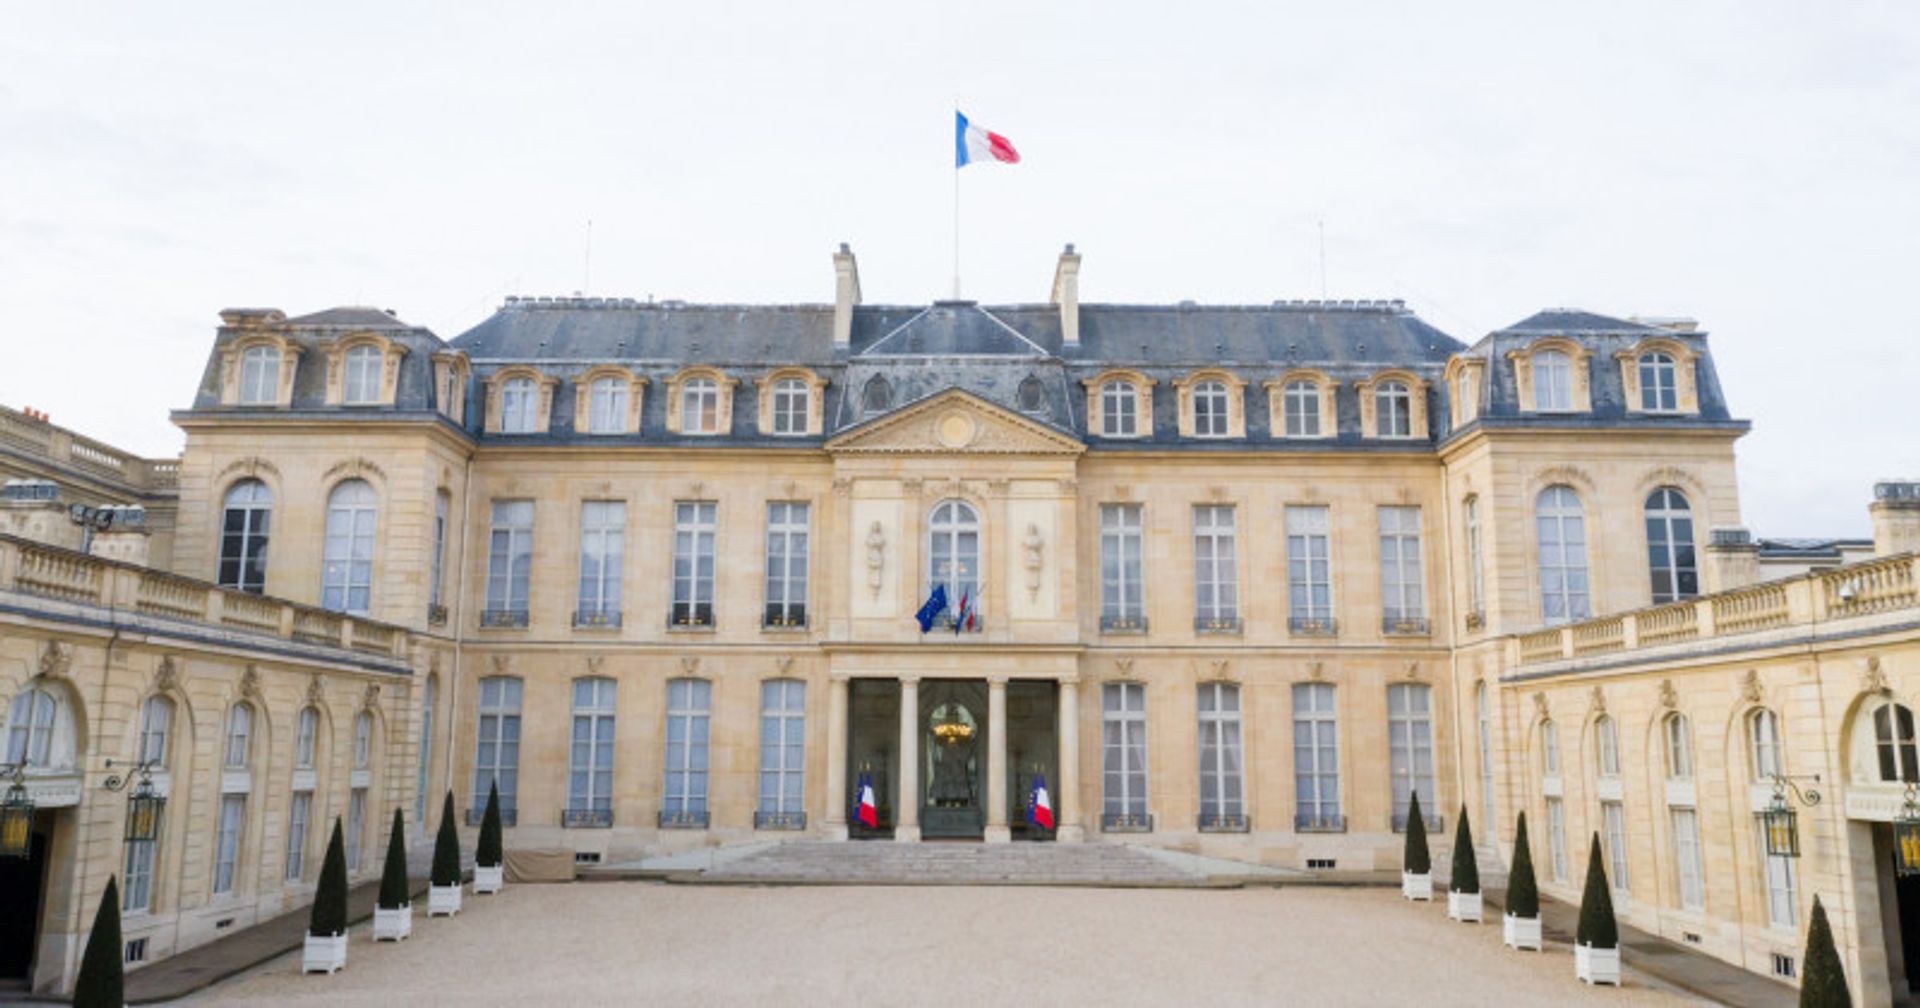 Le palais de l’Élysée, à Paris. Photo : Wikimedia commons